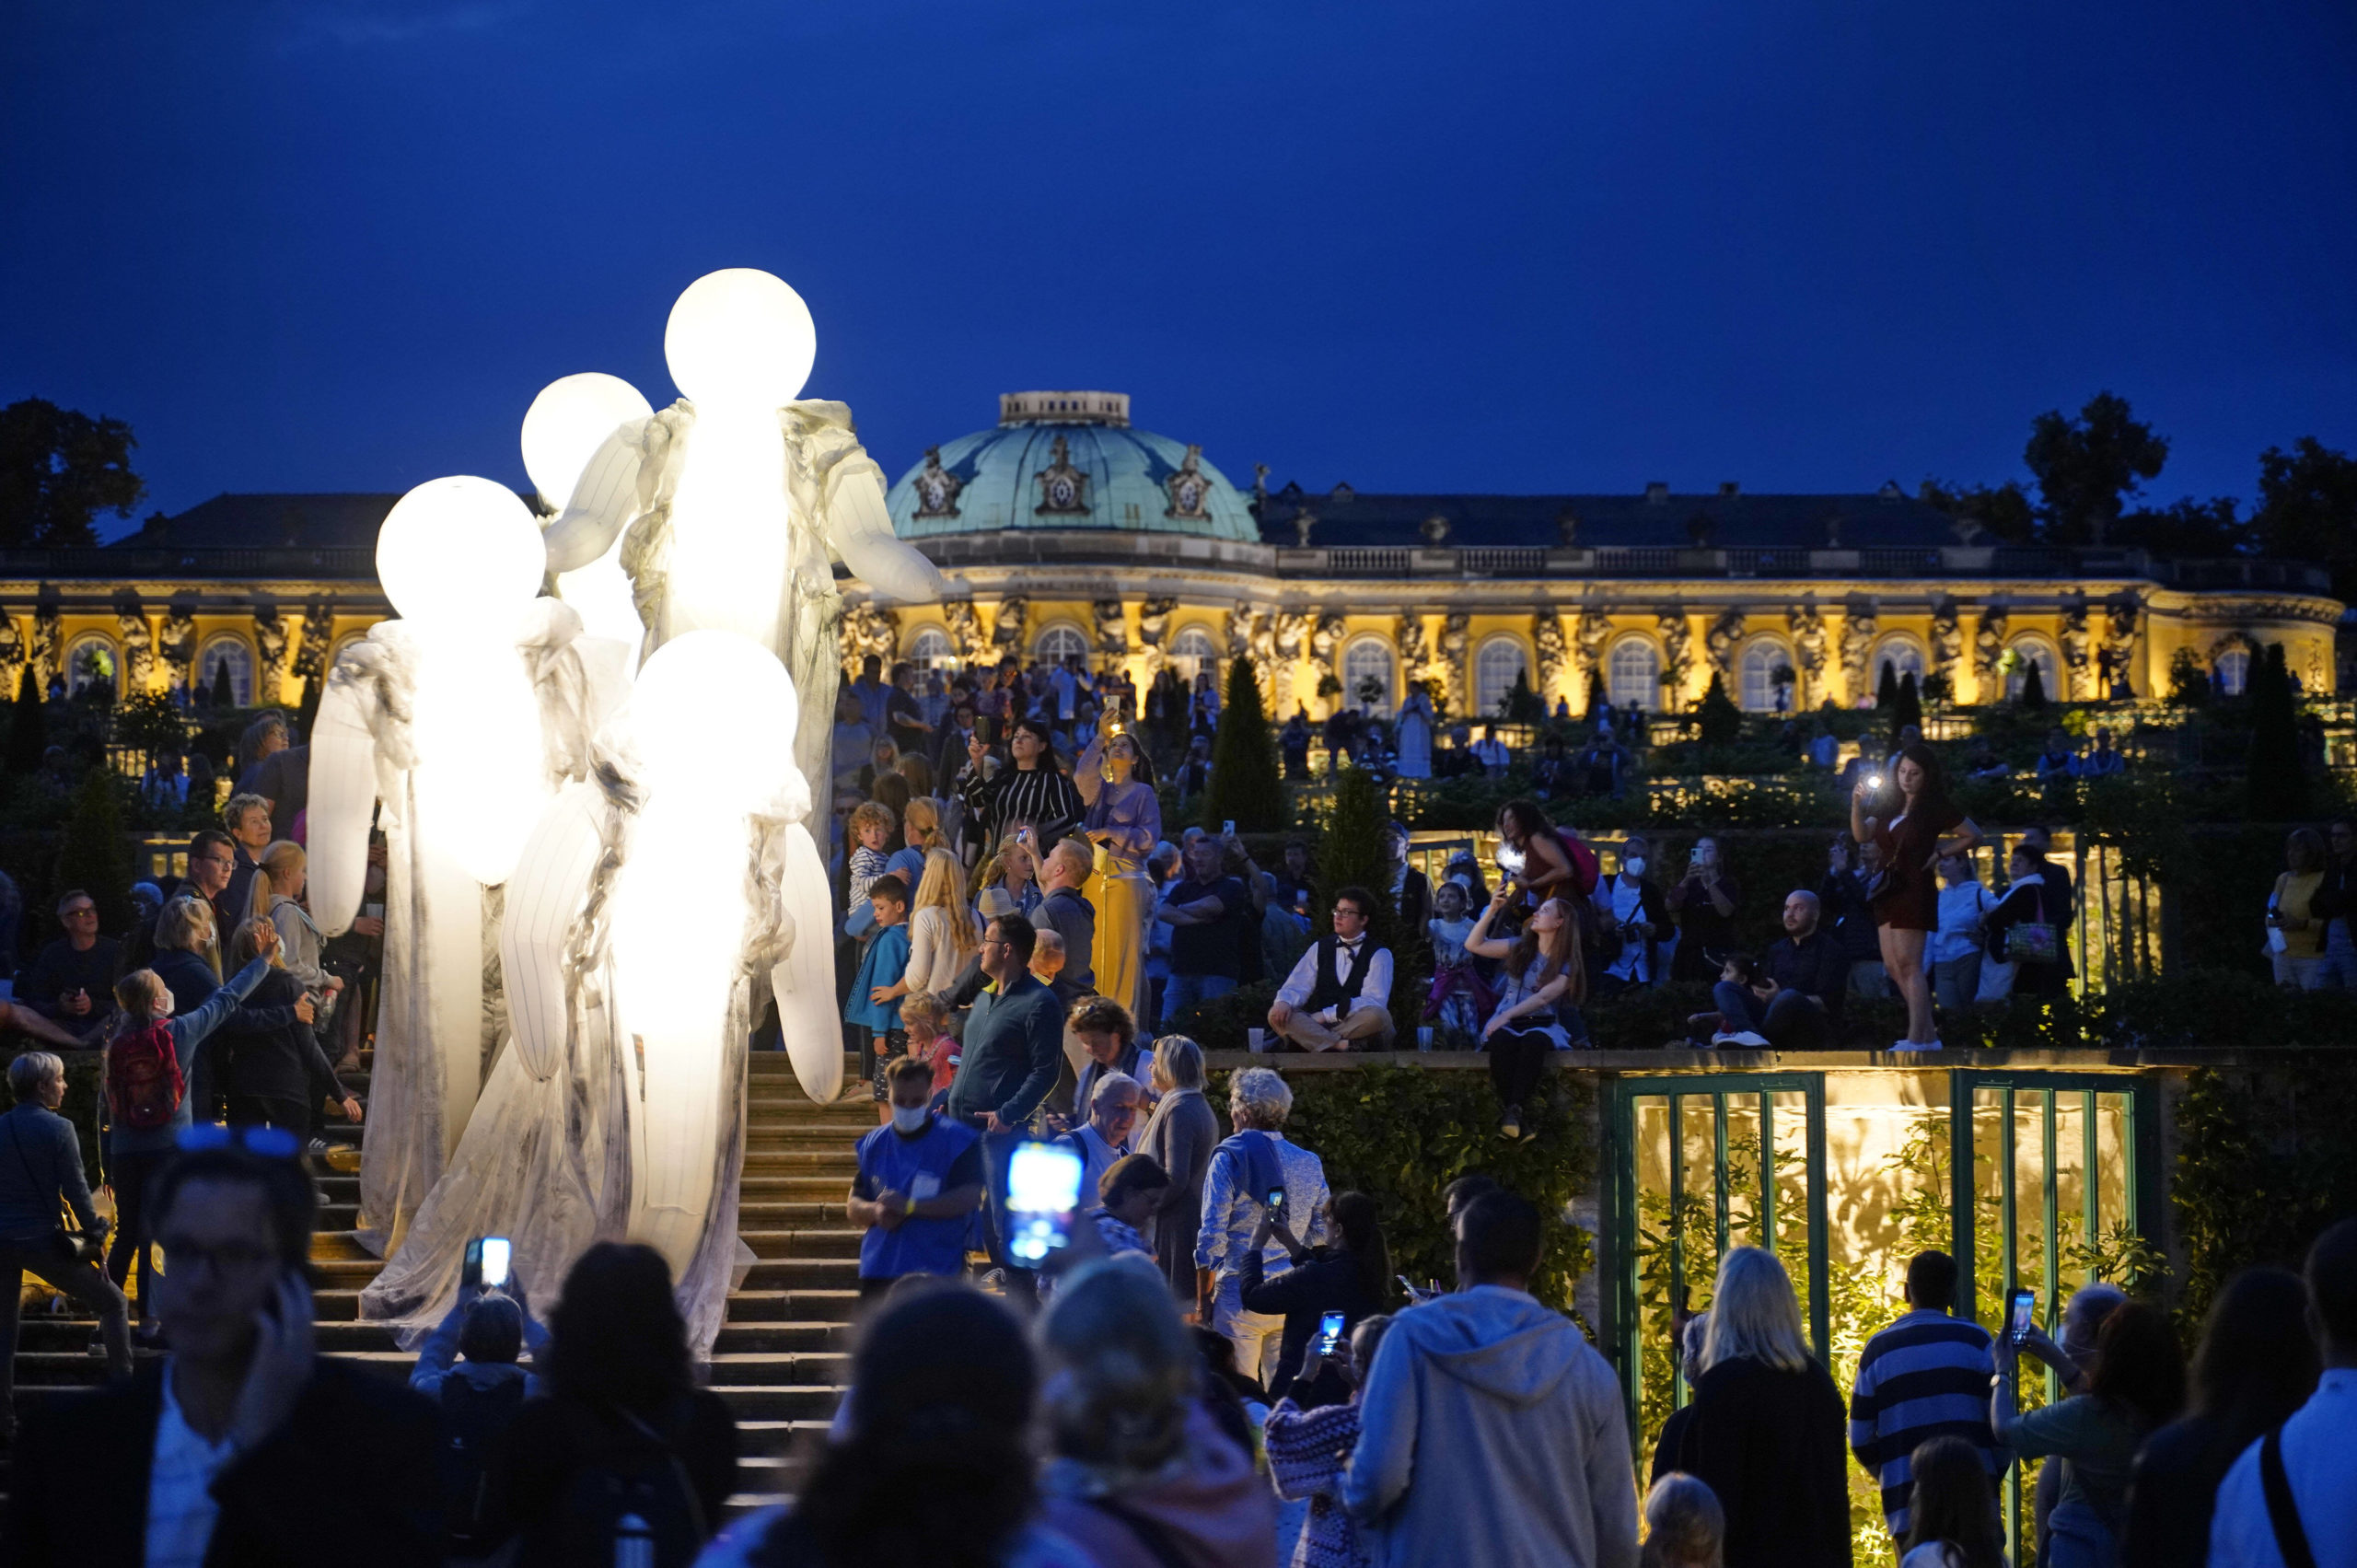 Veranstaltungen im August in Berlin 2021 folgte die Potsdamer Schlössernacht dem Motto "Les Rendez-Vous au Park Sanssouci". Das diesjährige Motto wurde noch nicht bekannt gegeben.